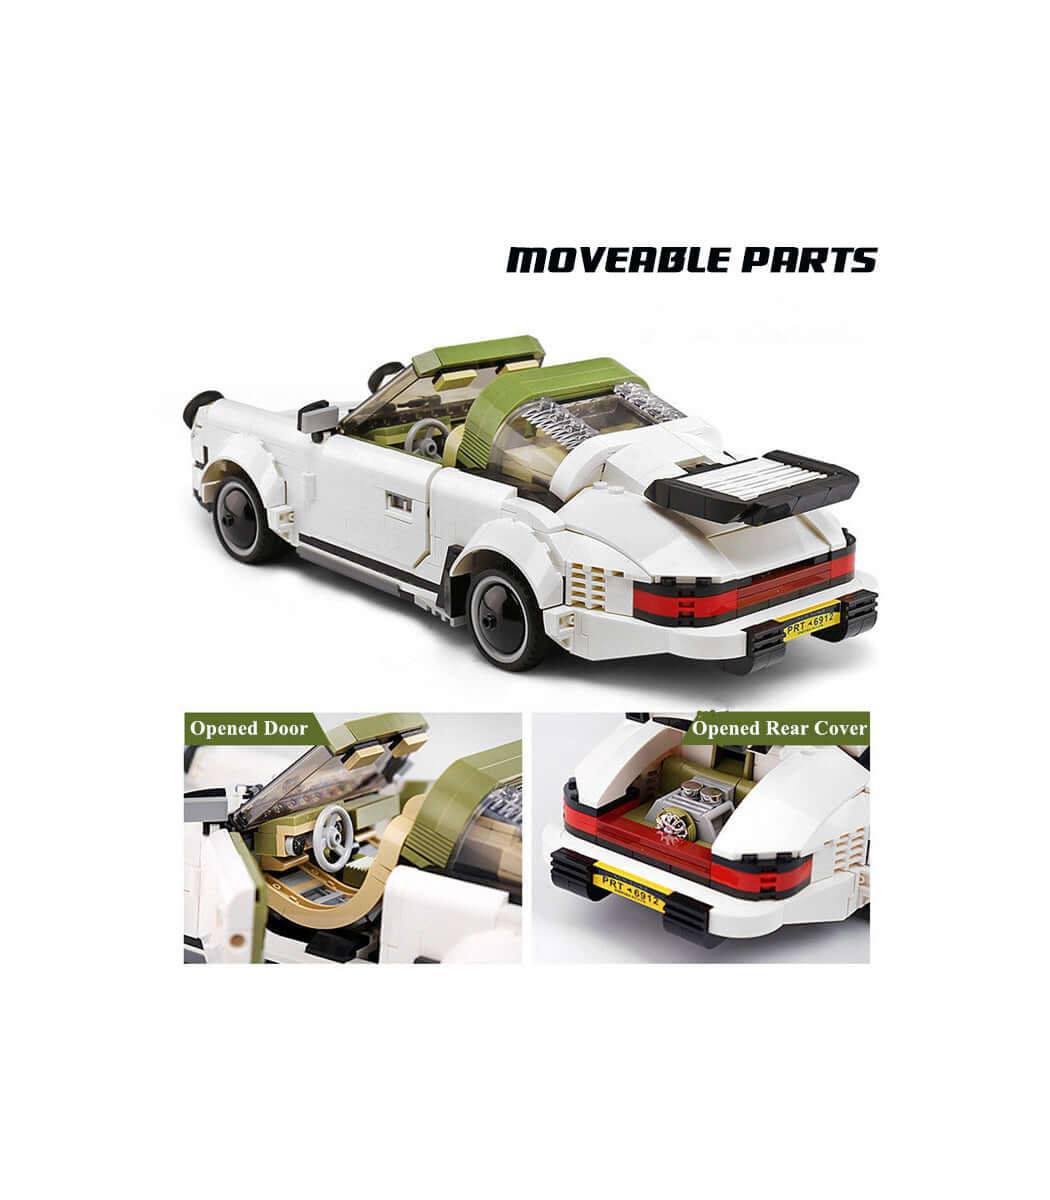 Schimmel König Porsche 911 Targa Modell | Kidstoy lover